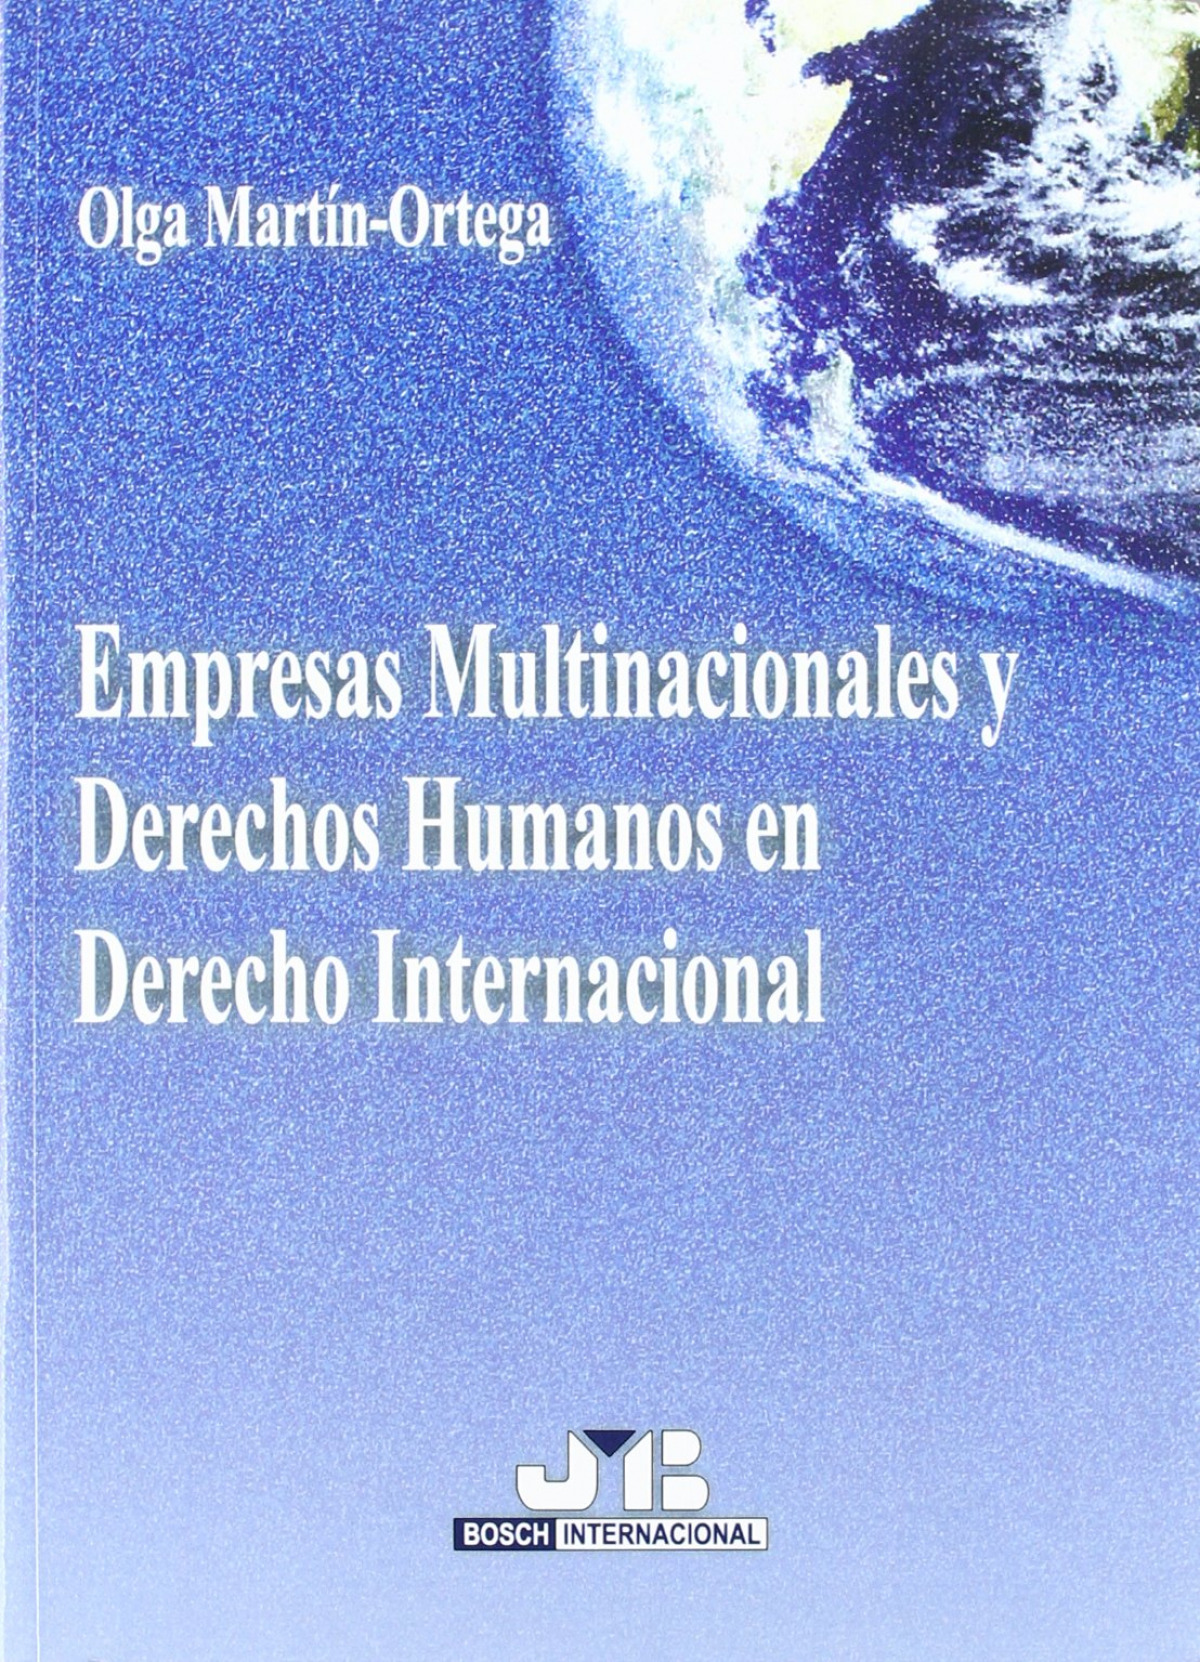 Empresas Multinacionales y Derechos Humanos en Derecho Internacional. - Martín-Ortega, Olga